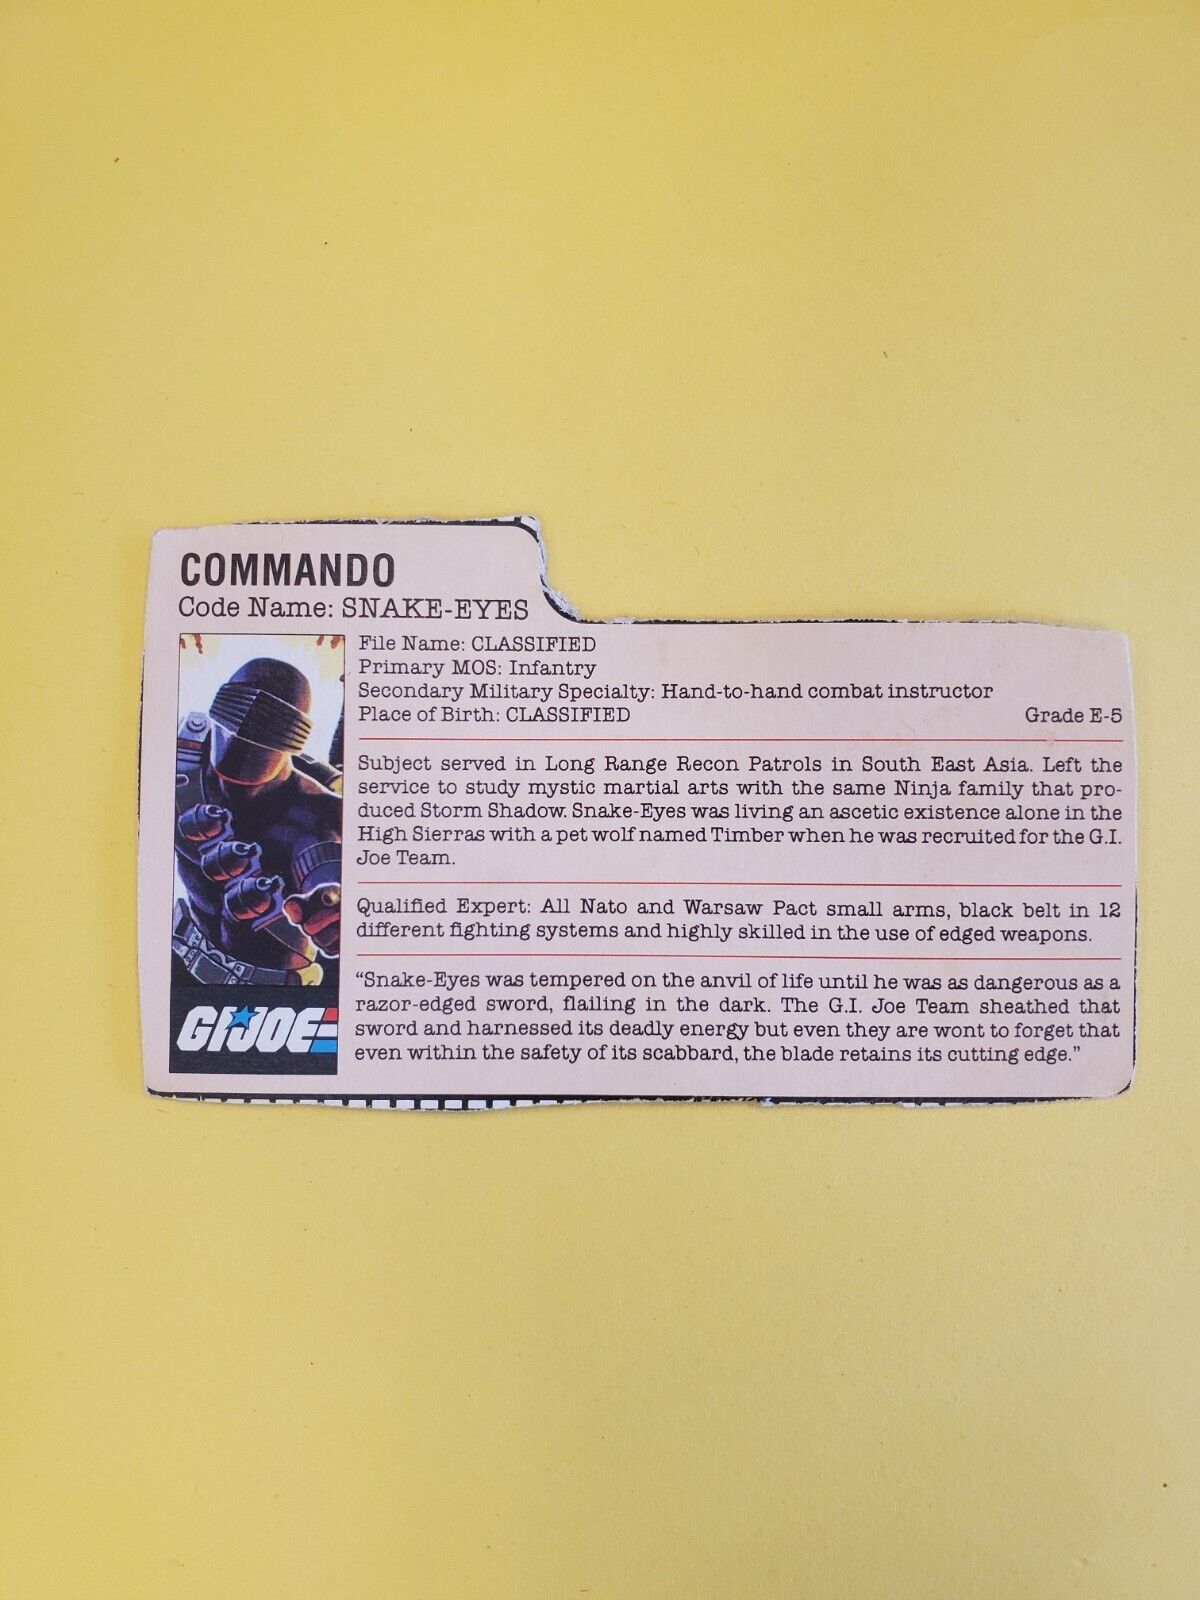 gi joe snake eyes file card - Commando